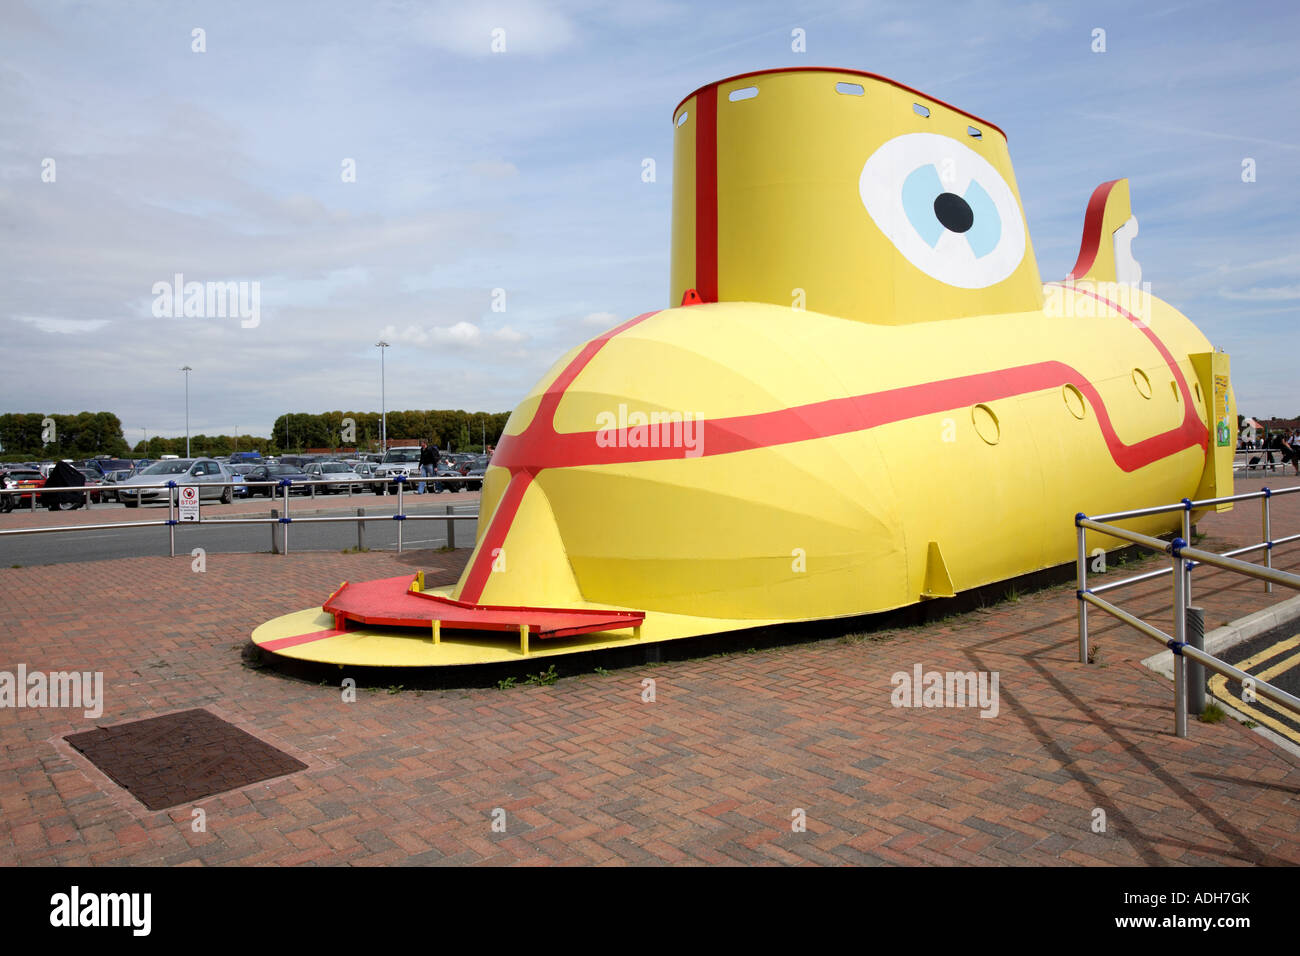 Gelben u-Boot vor John Lennon Airport in Liverpool, Lied von Ringo Starr aus dem Album "Revolver" geparkt Stockfoto